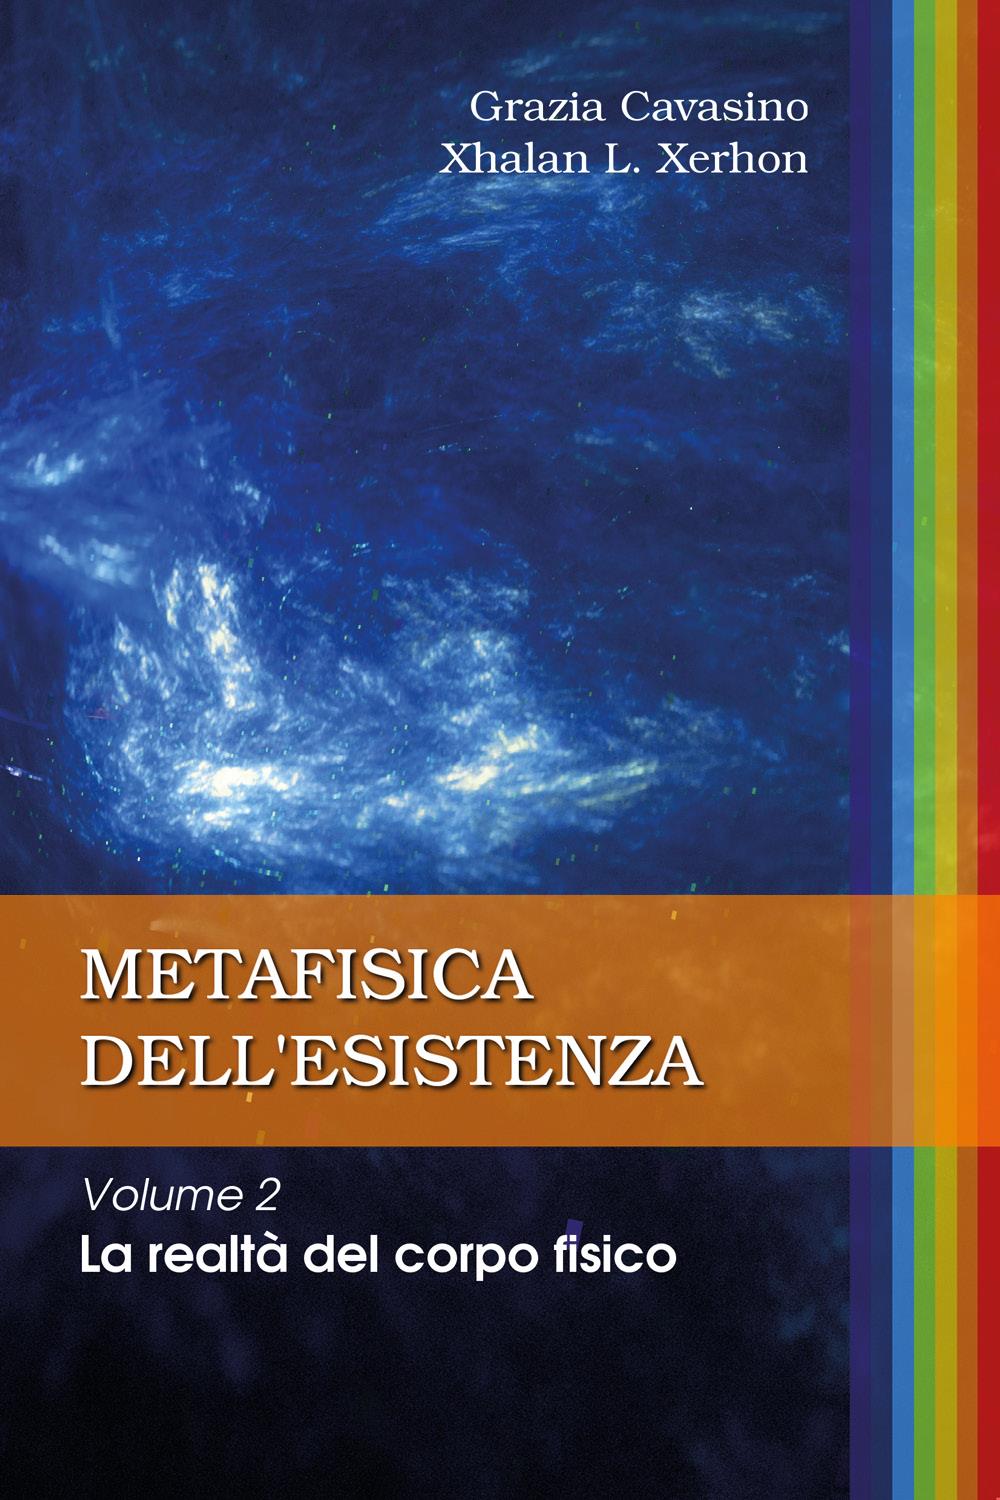 METAFISICA DELL’ESISTENZA Volume 2 – La realtà del corpo fisico